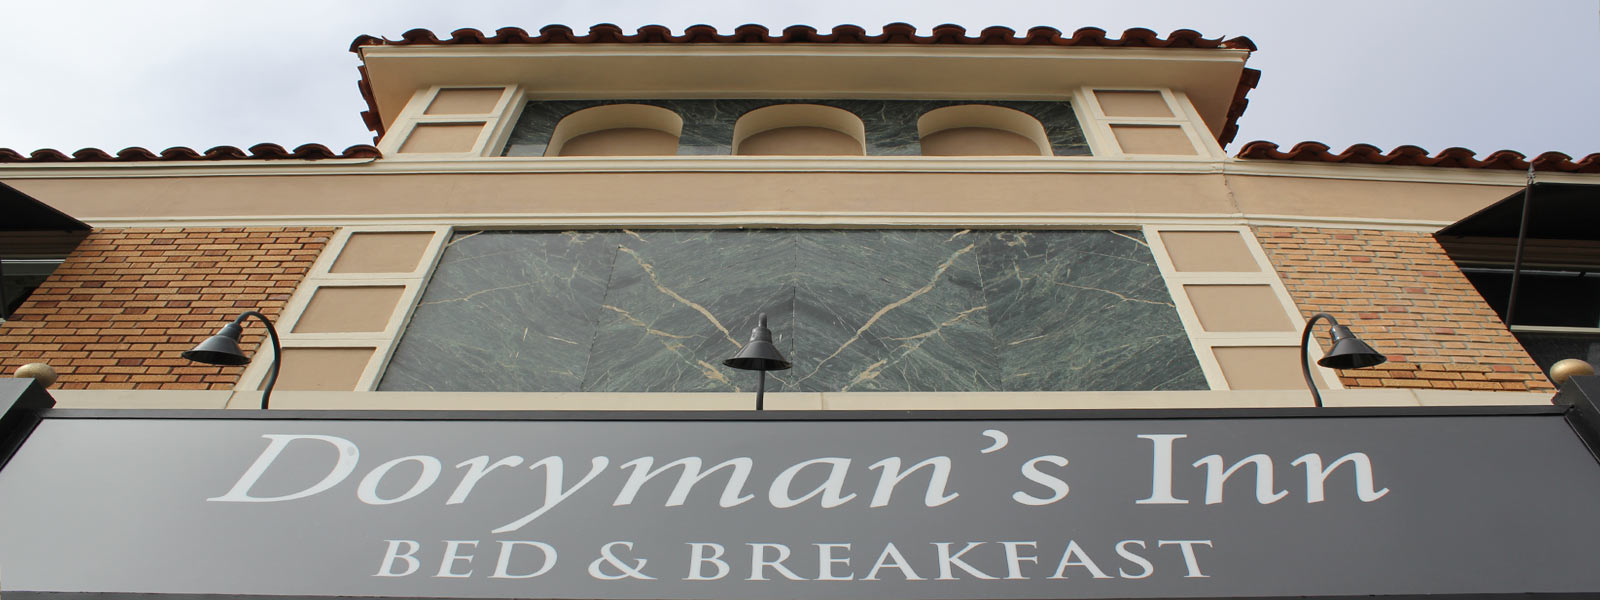 Front entrance Dorymans Inn